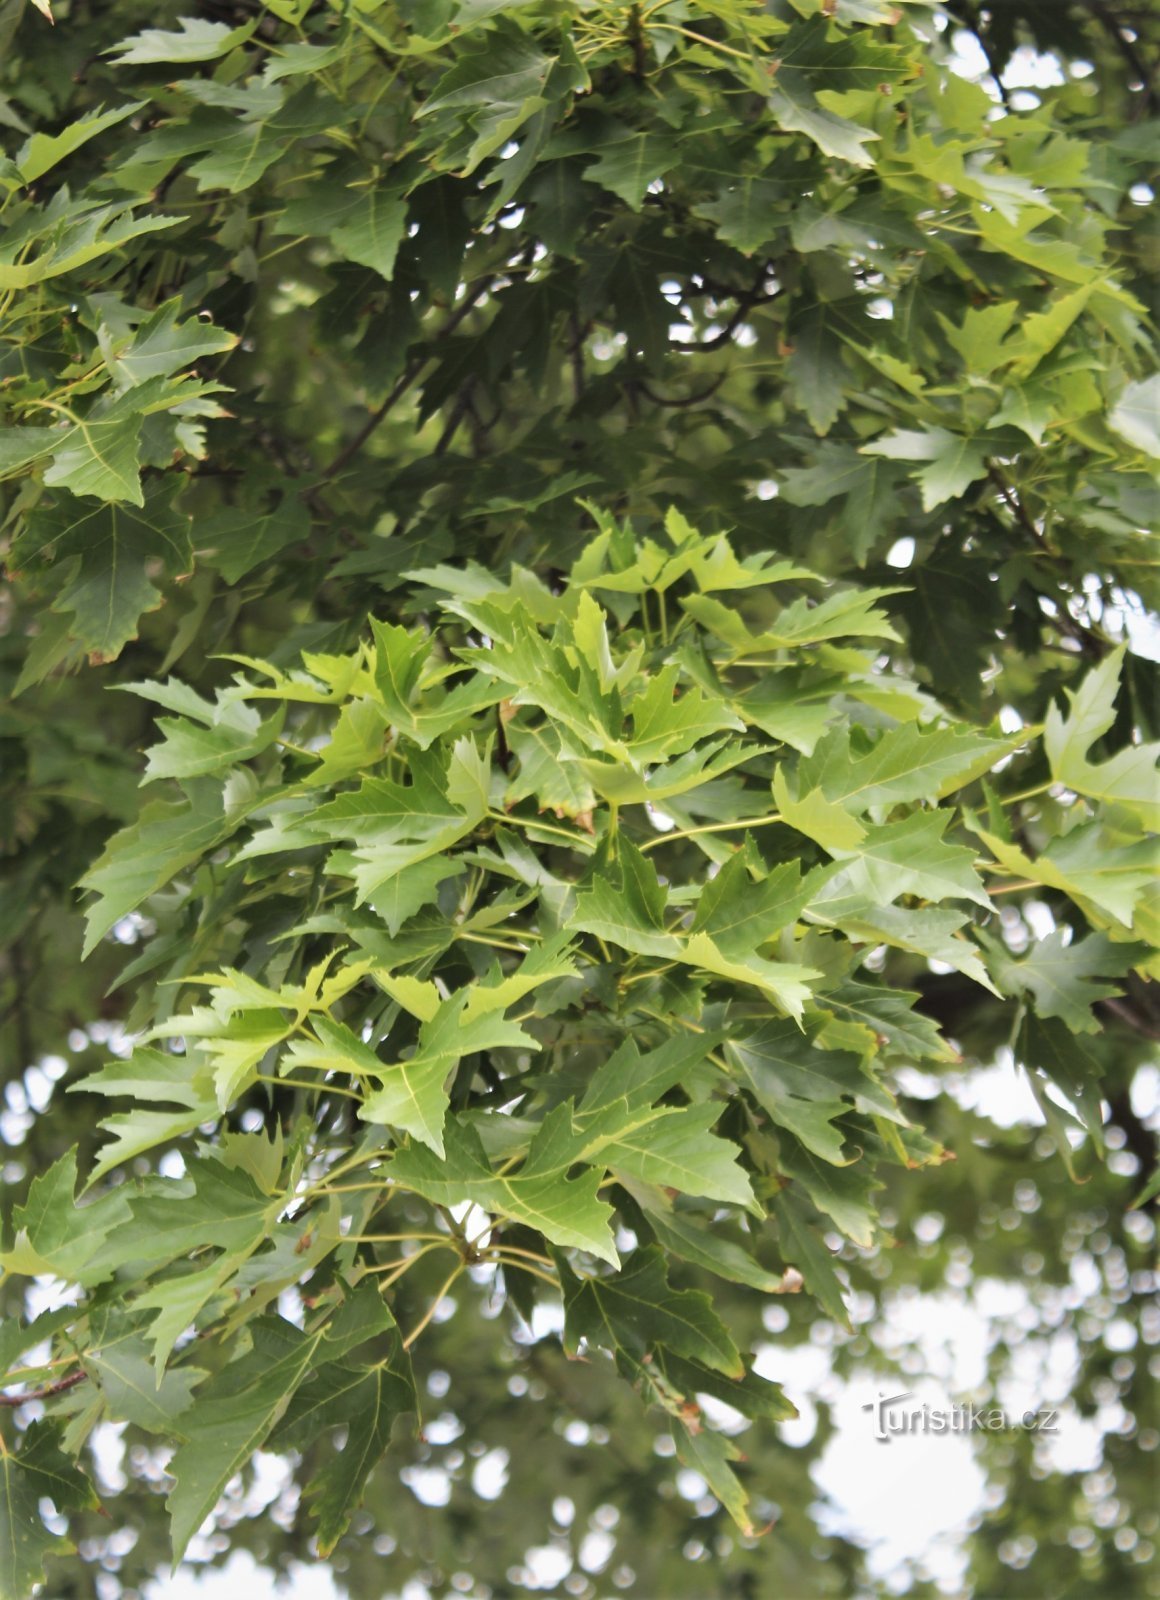 Detalje af en gren med blade